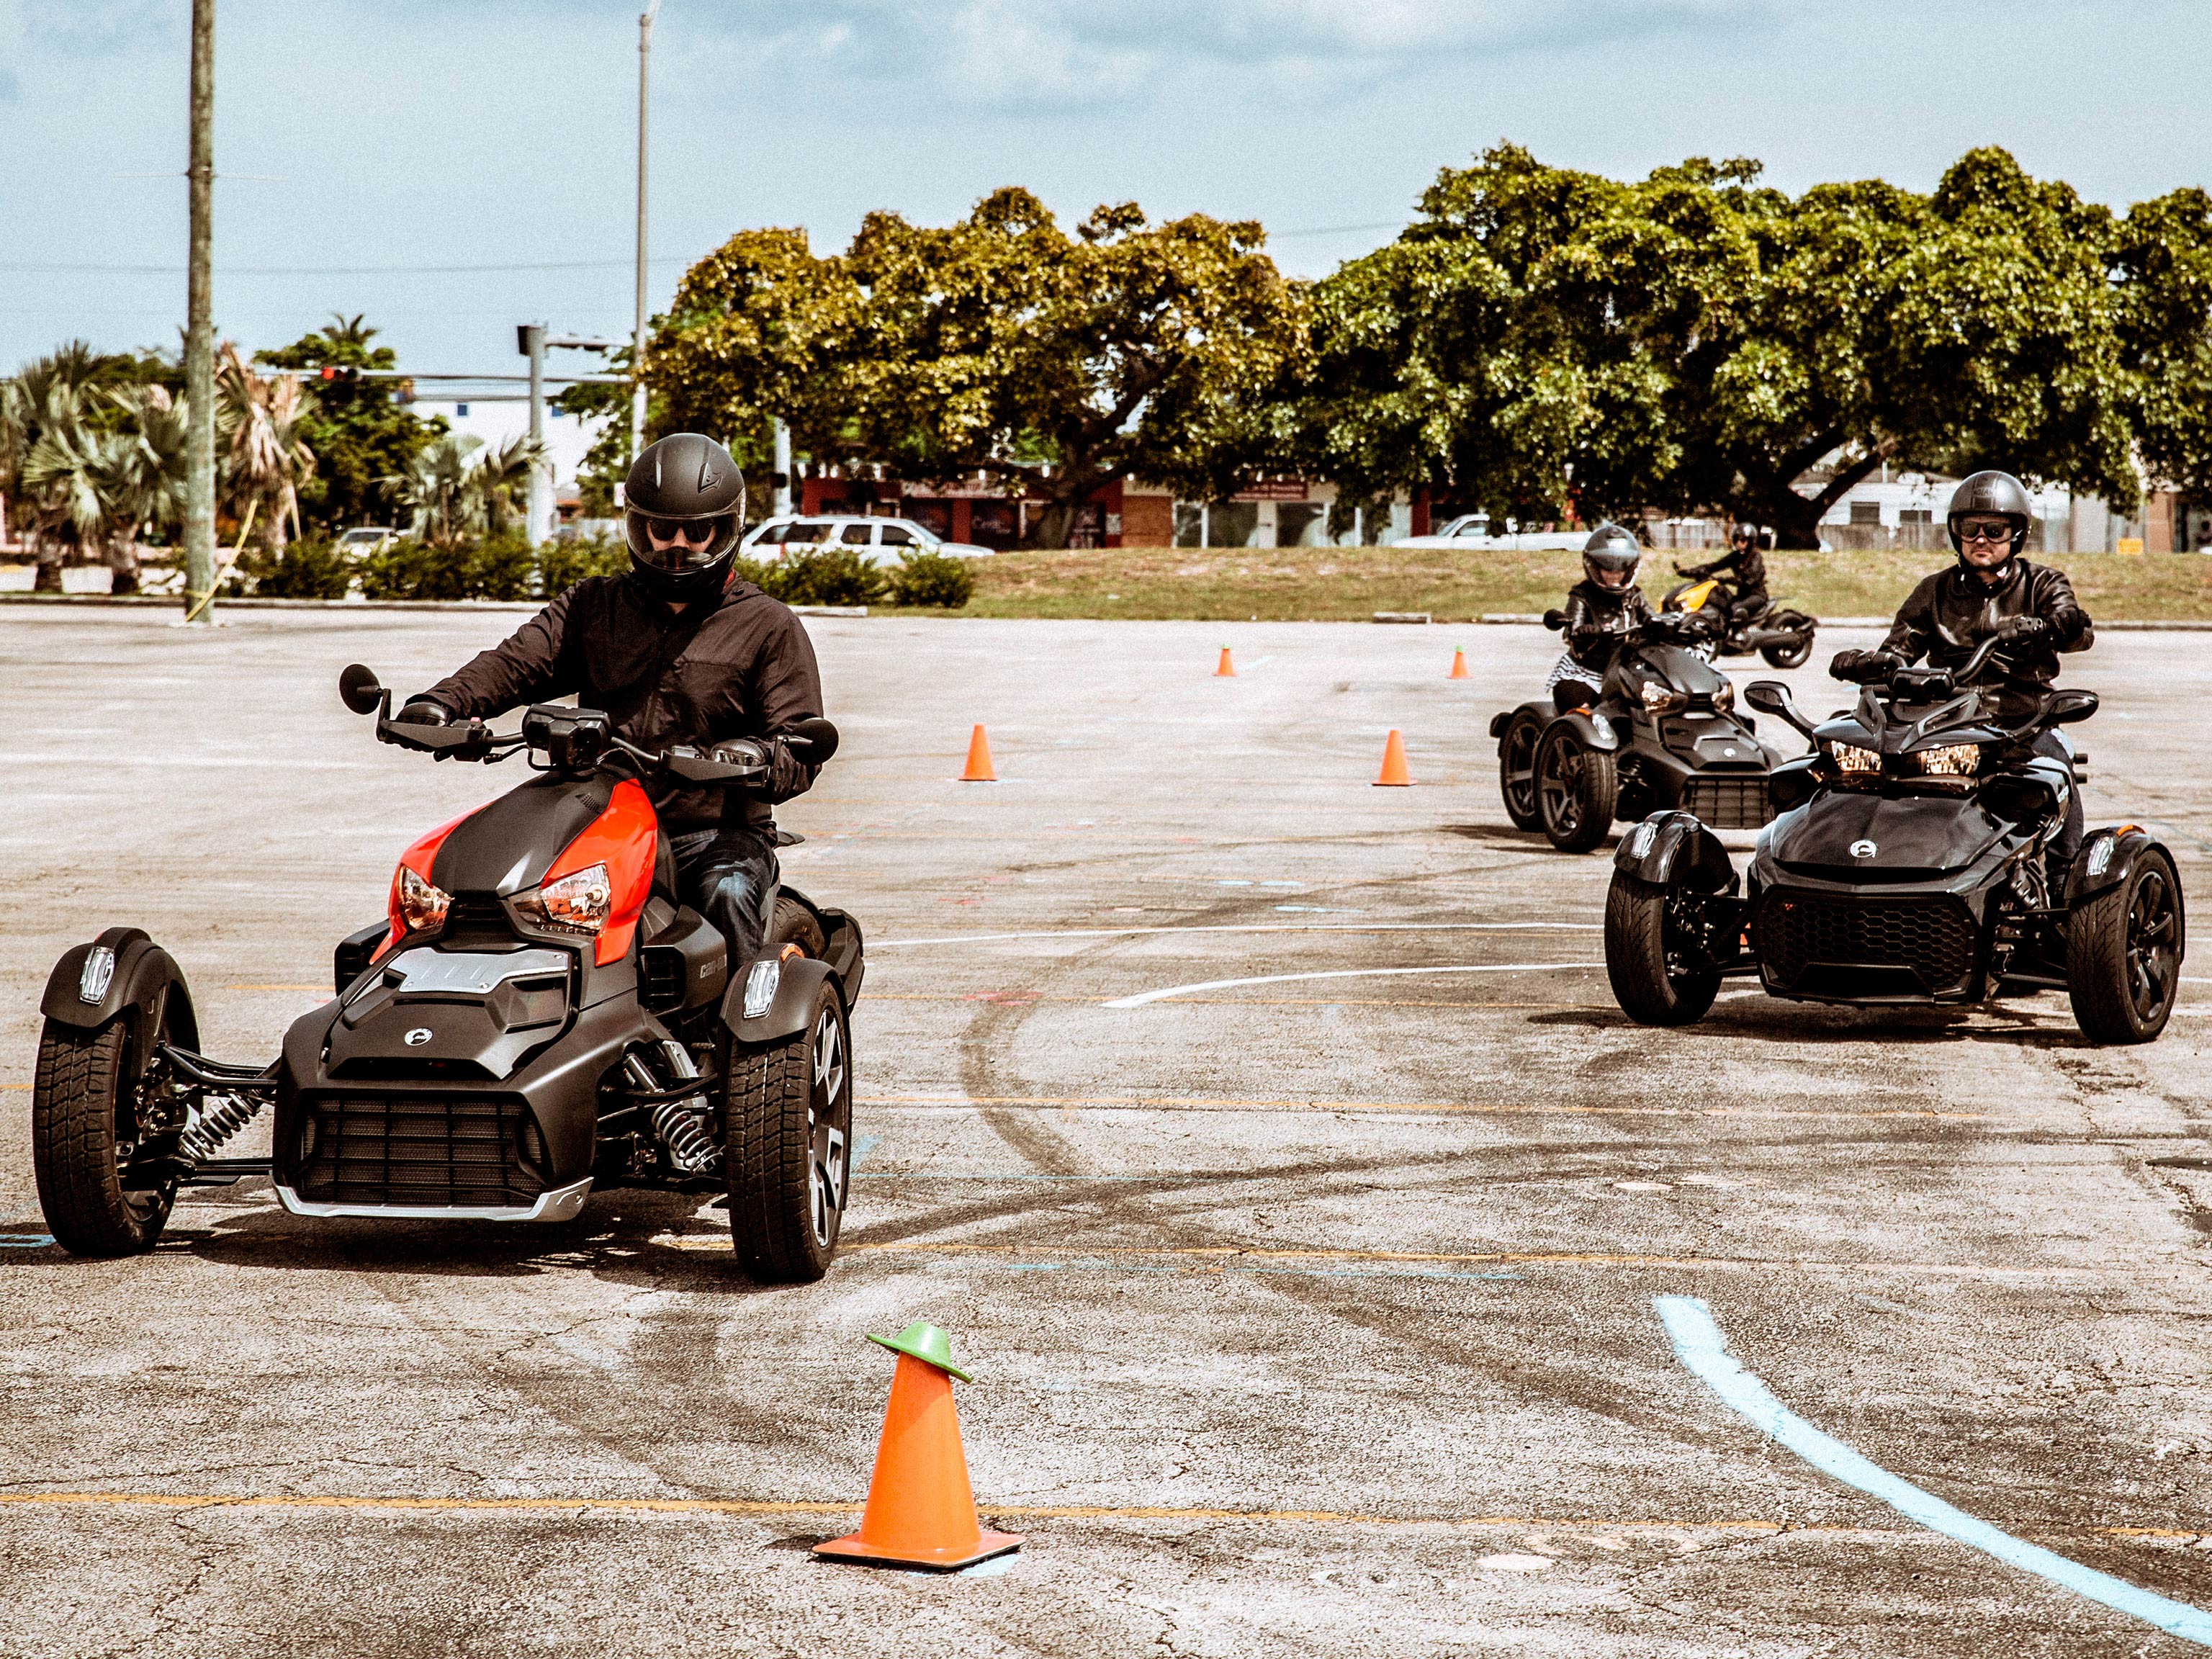 Piloti di veicoli a tre ruote mentre imparano i fondamentali in un corso di formazione